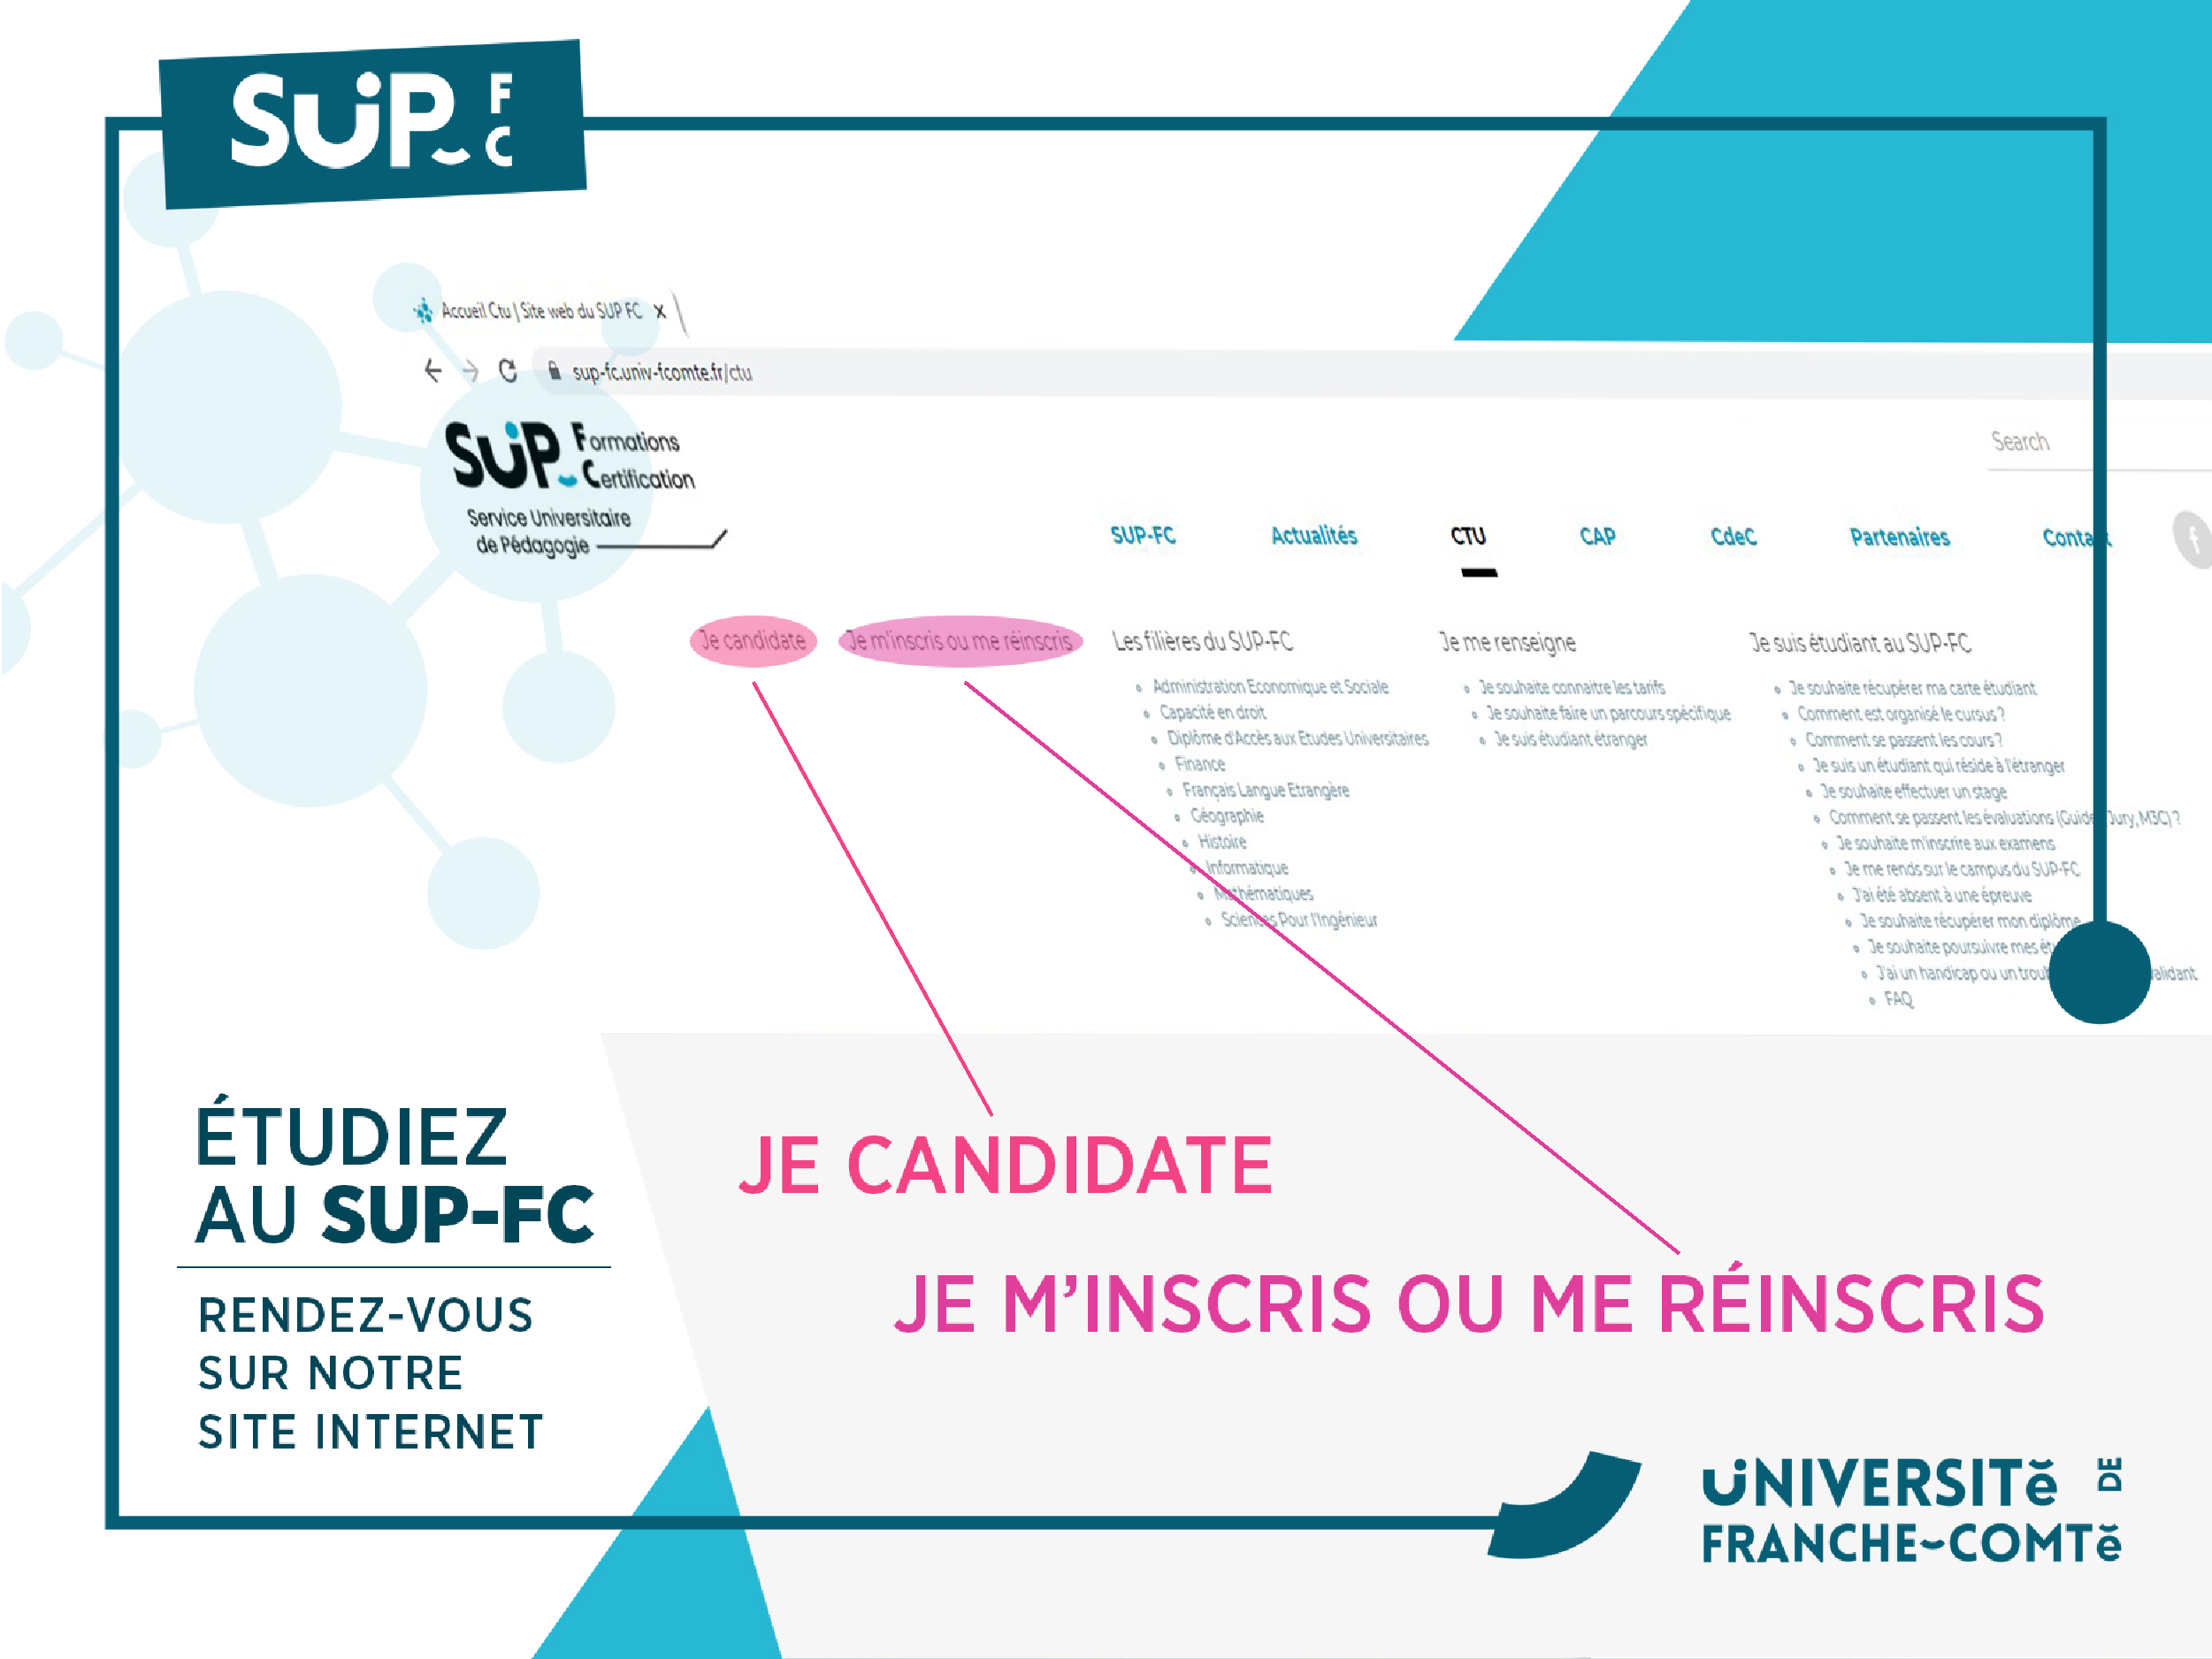 SUP-FC CTU candidature inscription